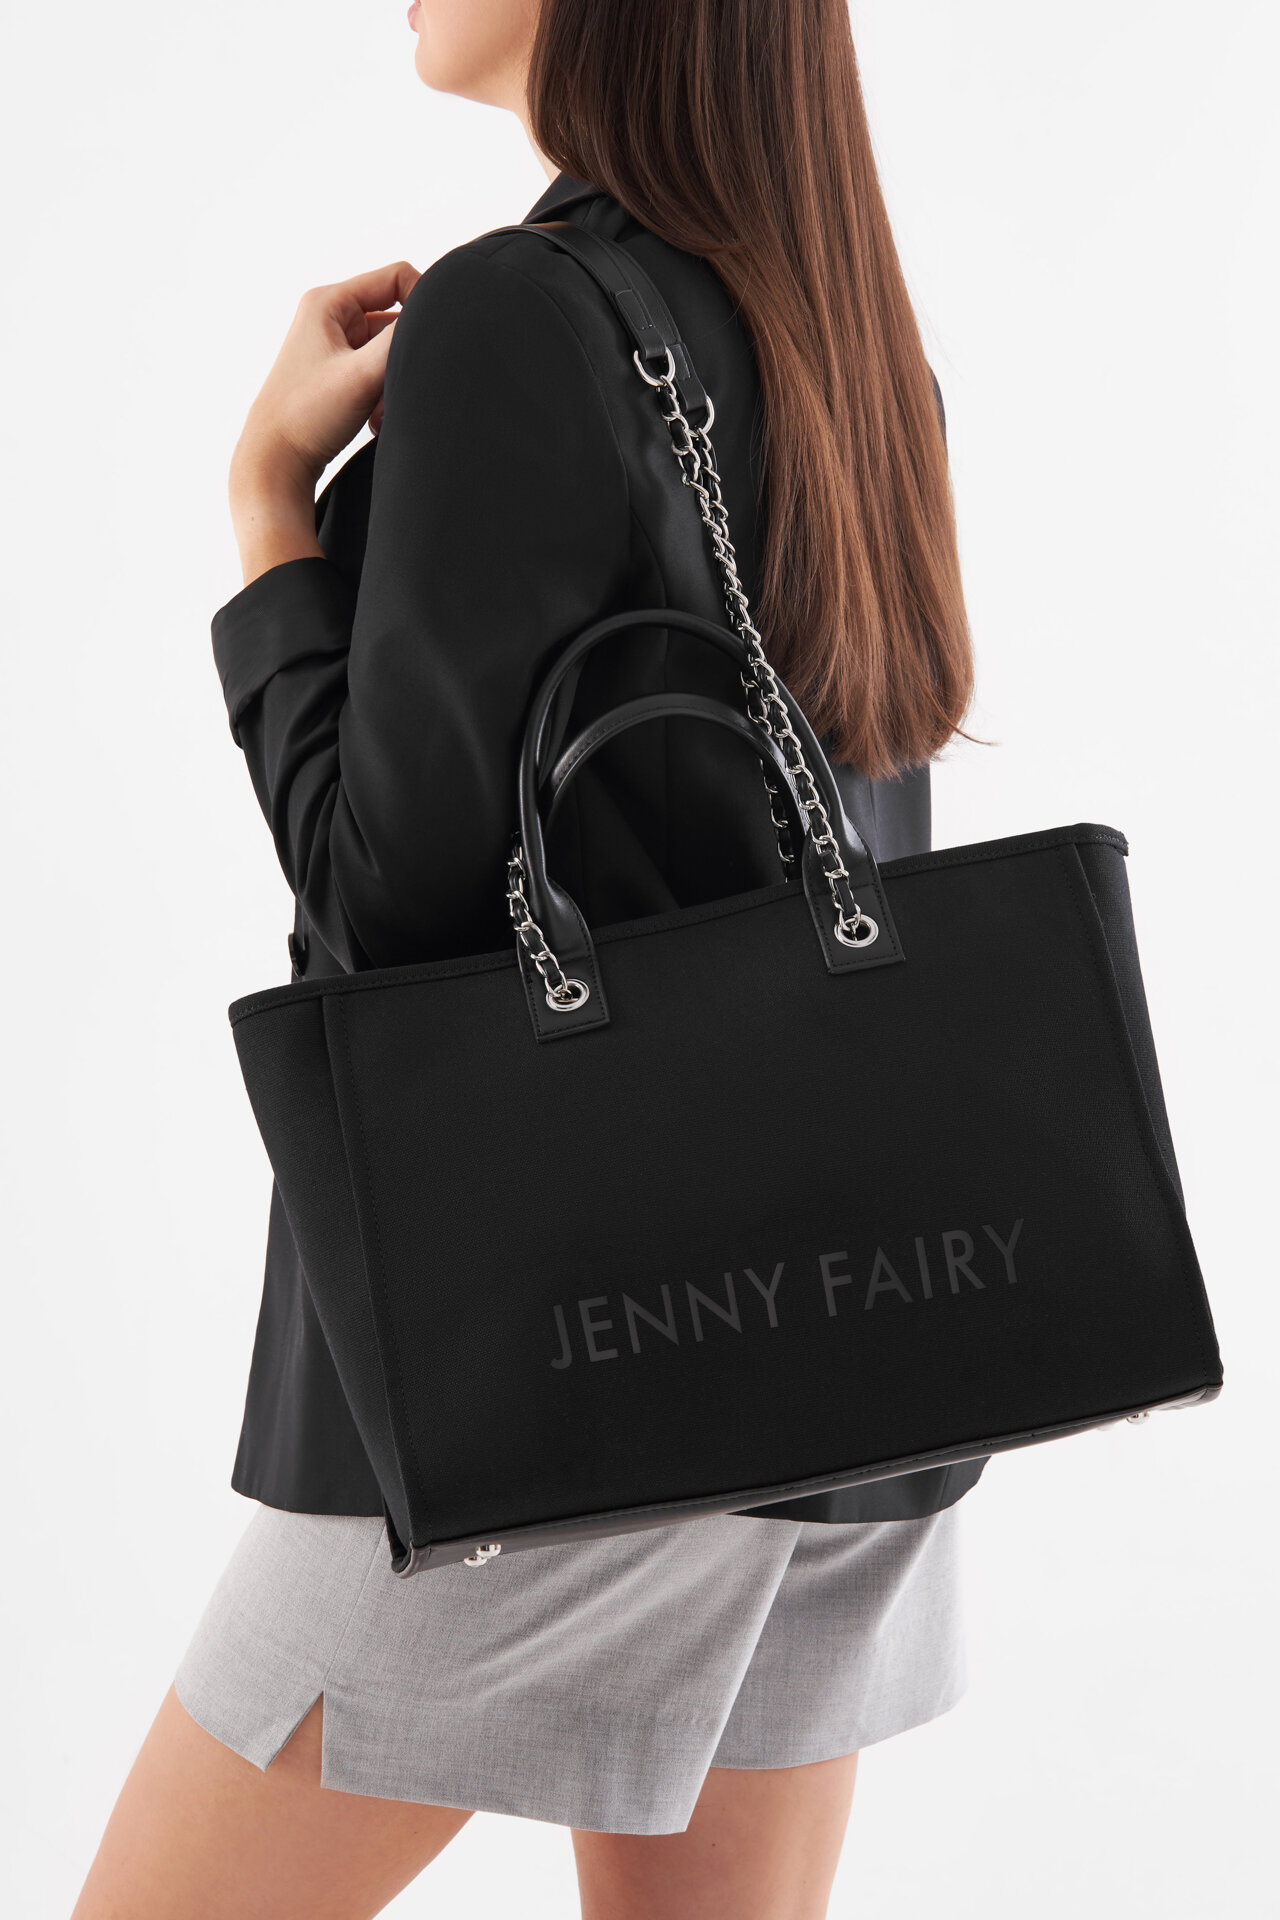 Kézitáska Jenny Fairy